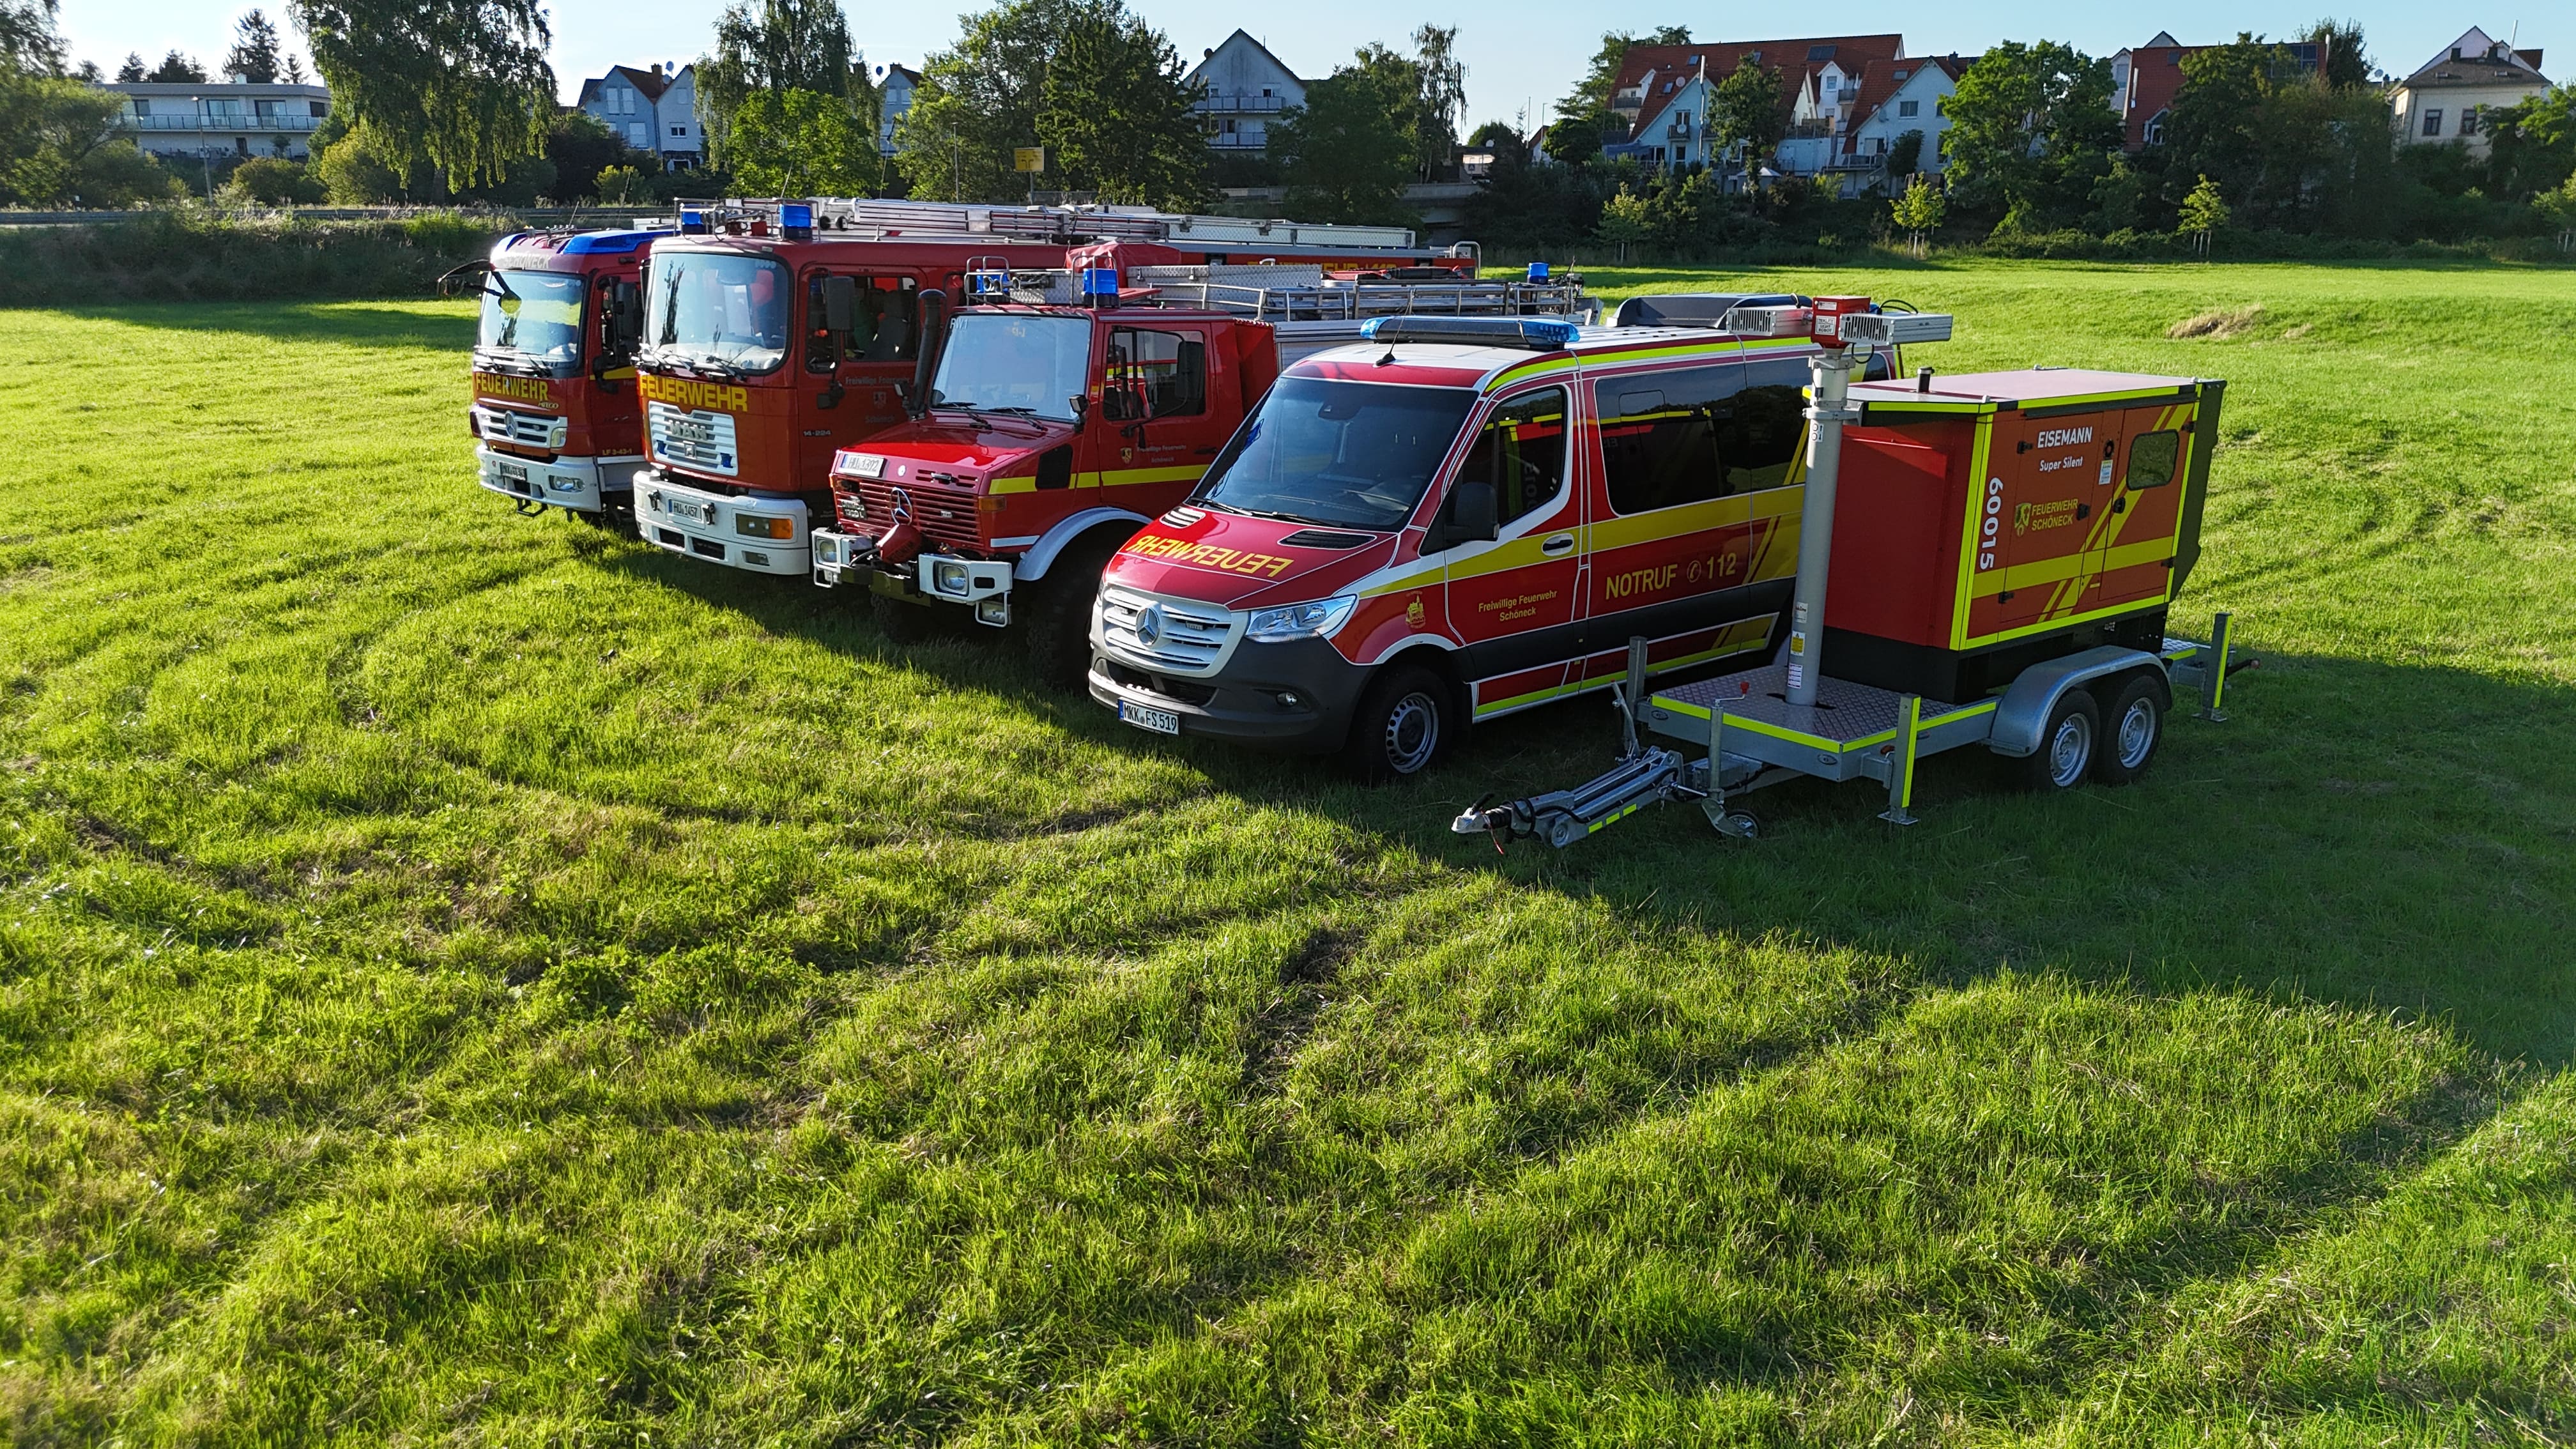 Herzlich Willkommen bei der Freiwilligen Feuerwehr Schöneck107